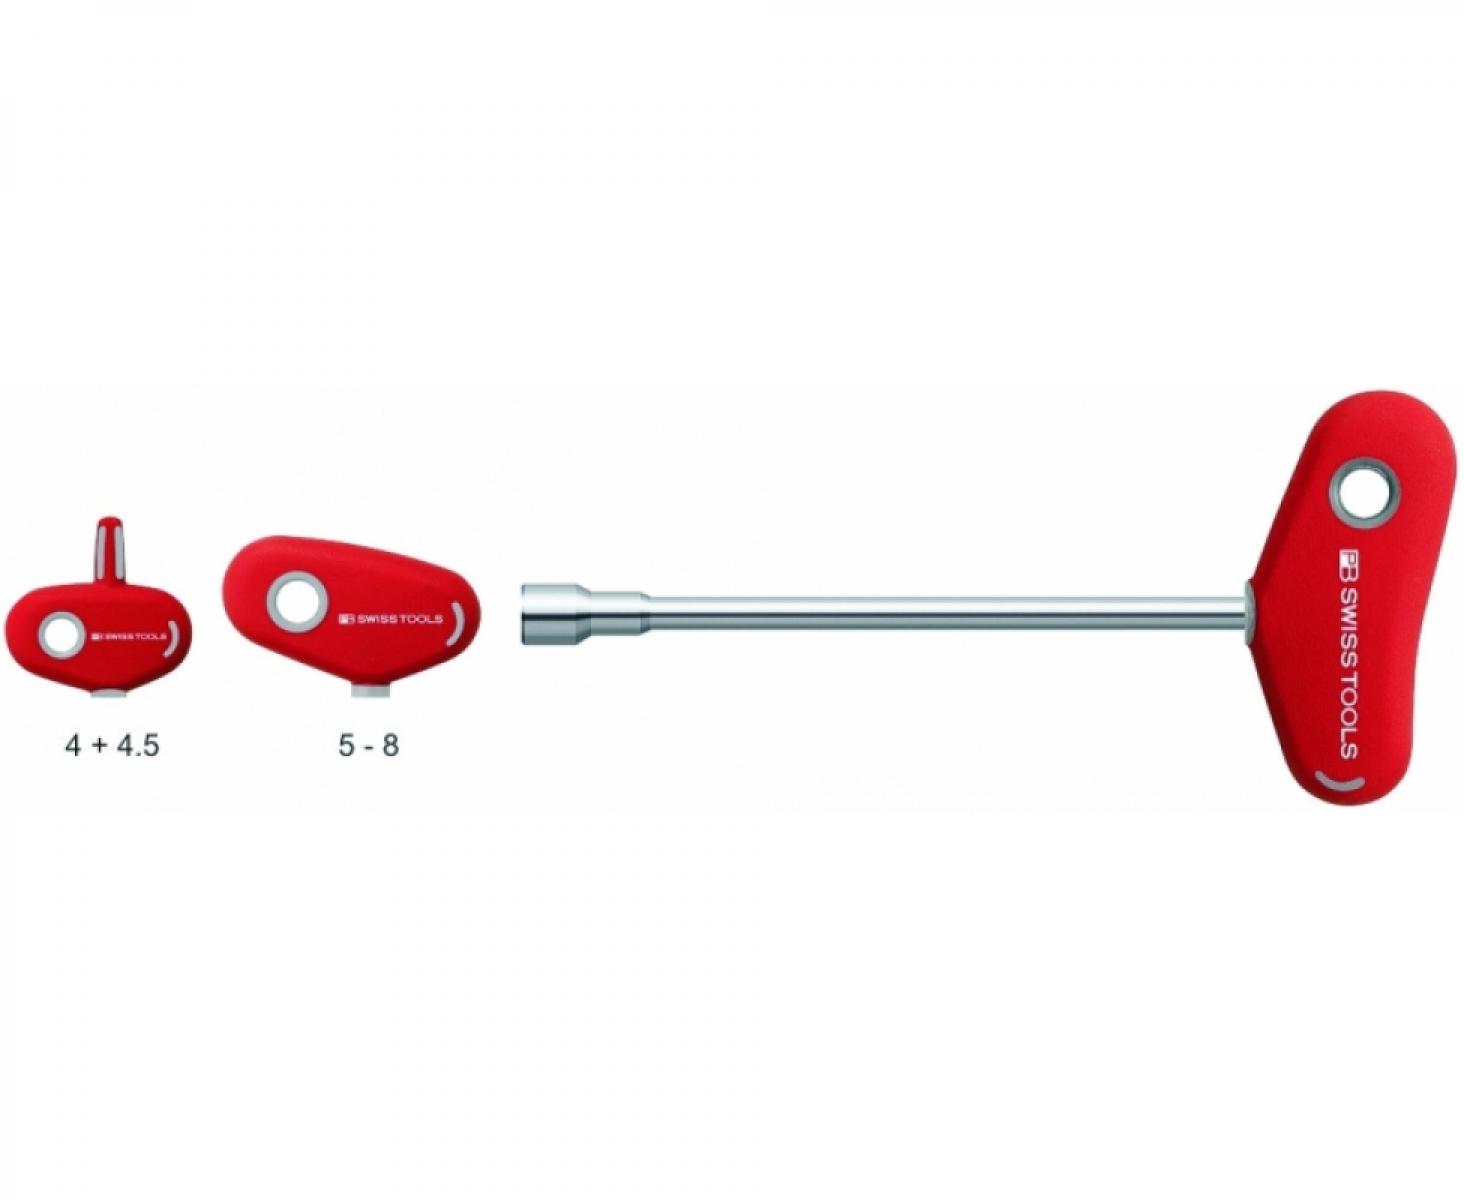 Отвертка-торцовый ключ HEX Nut с Т-образной ручкой PB Swiss Tools PB 202.4-85 M4